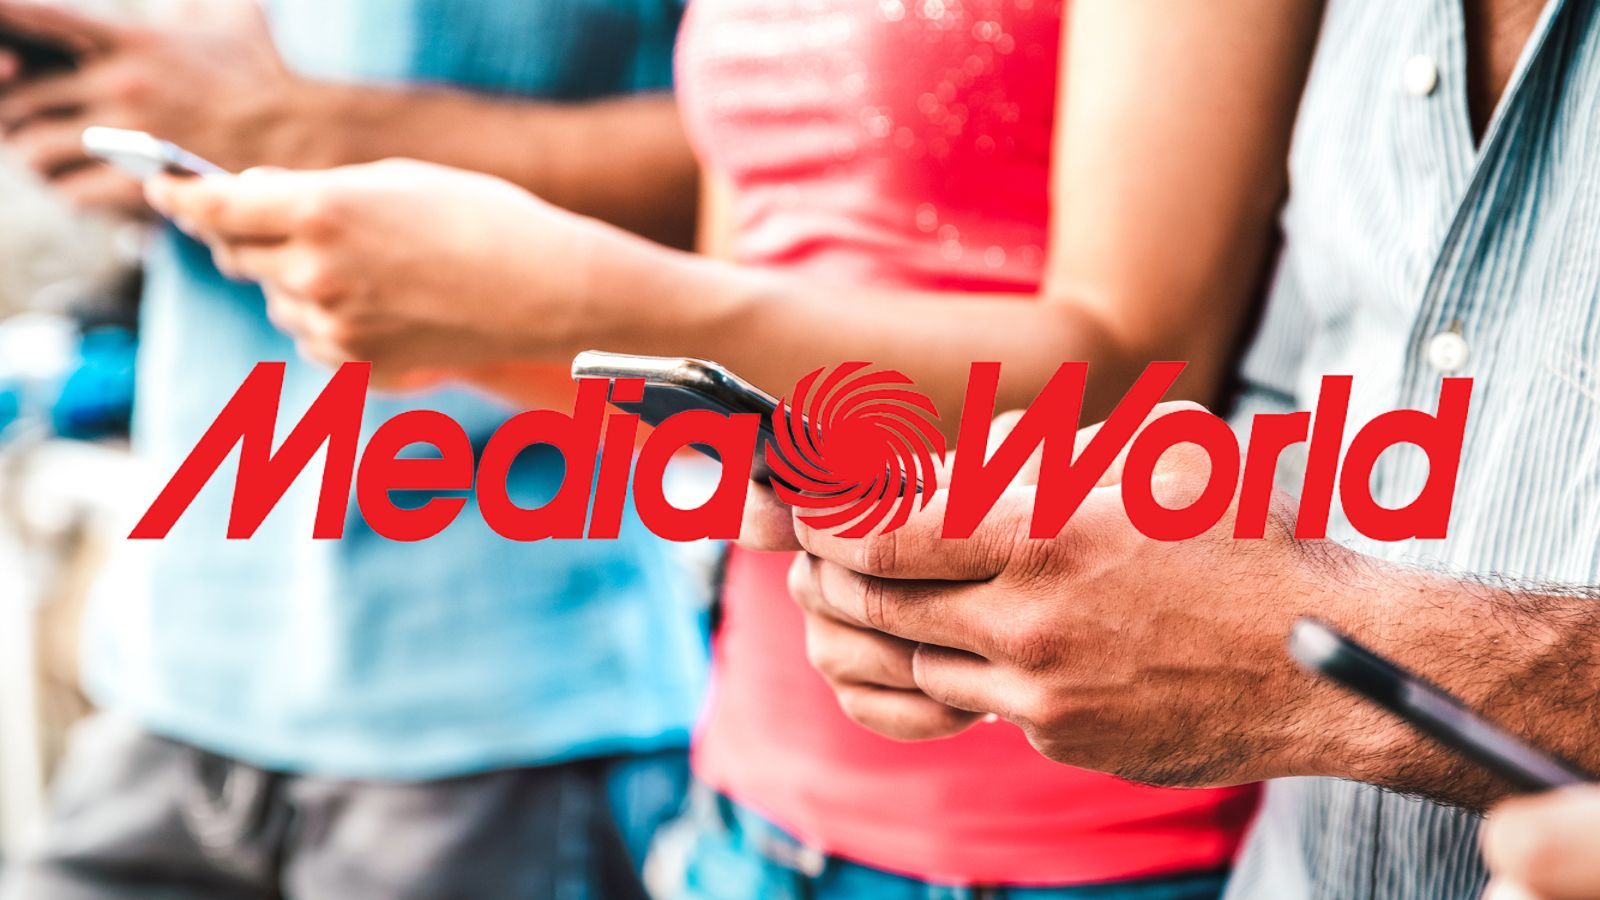 MediaWorld IMPAZZISCE, ecco smartphone in REGALO e tutto al 50%